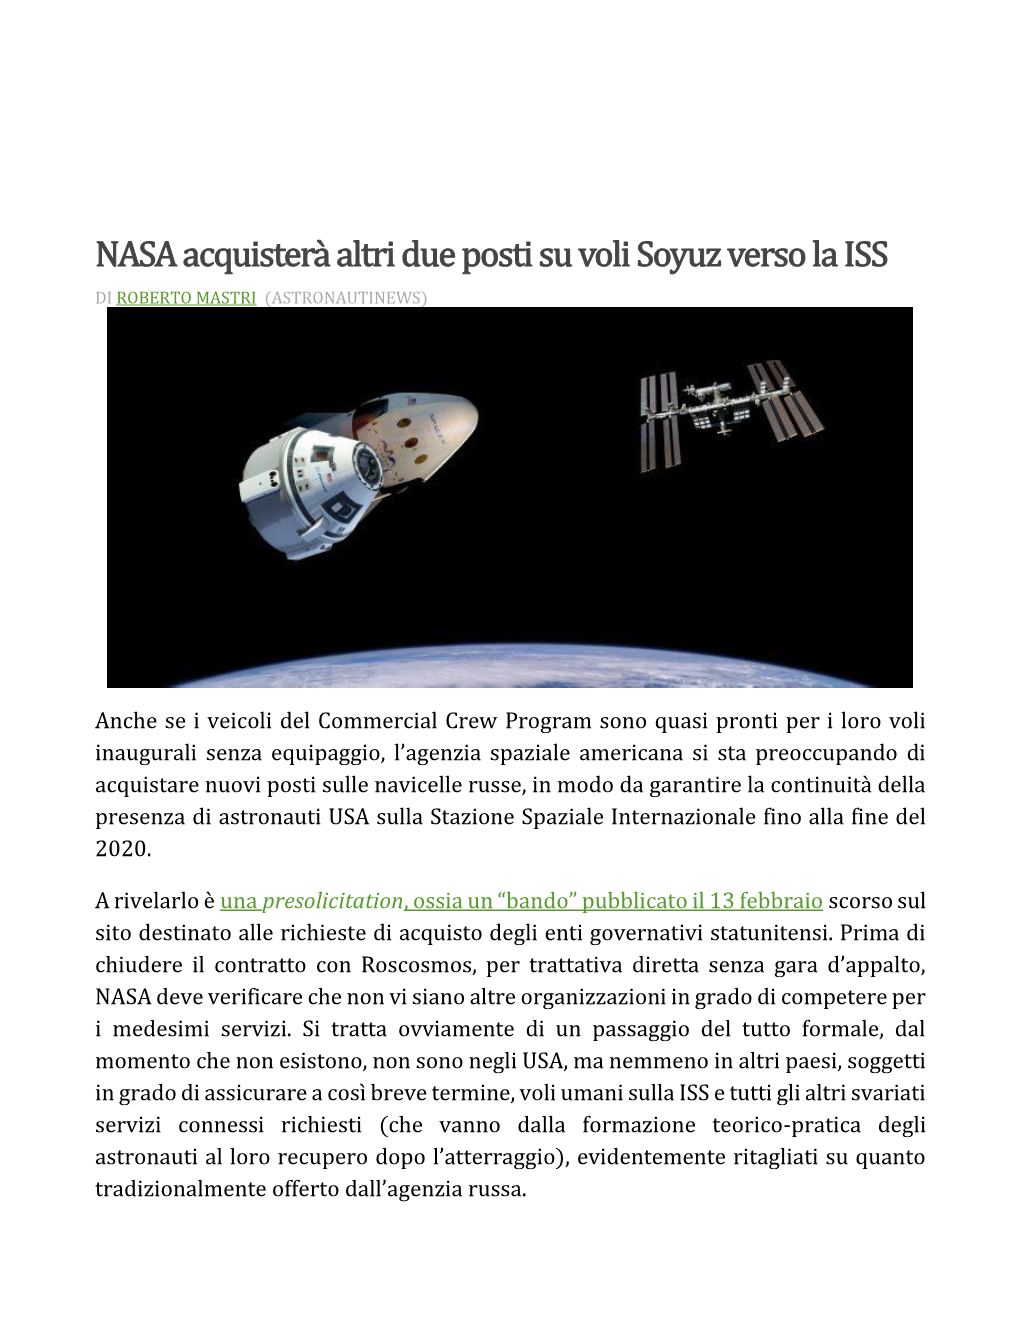 NASA Acquisterà Altri Due Posti Su Voli Soyuz Verso La ISS DI ROBERTO MASTRI (ASTRONAUTINEWS)